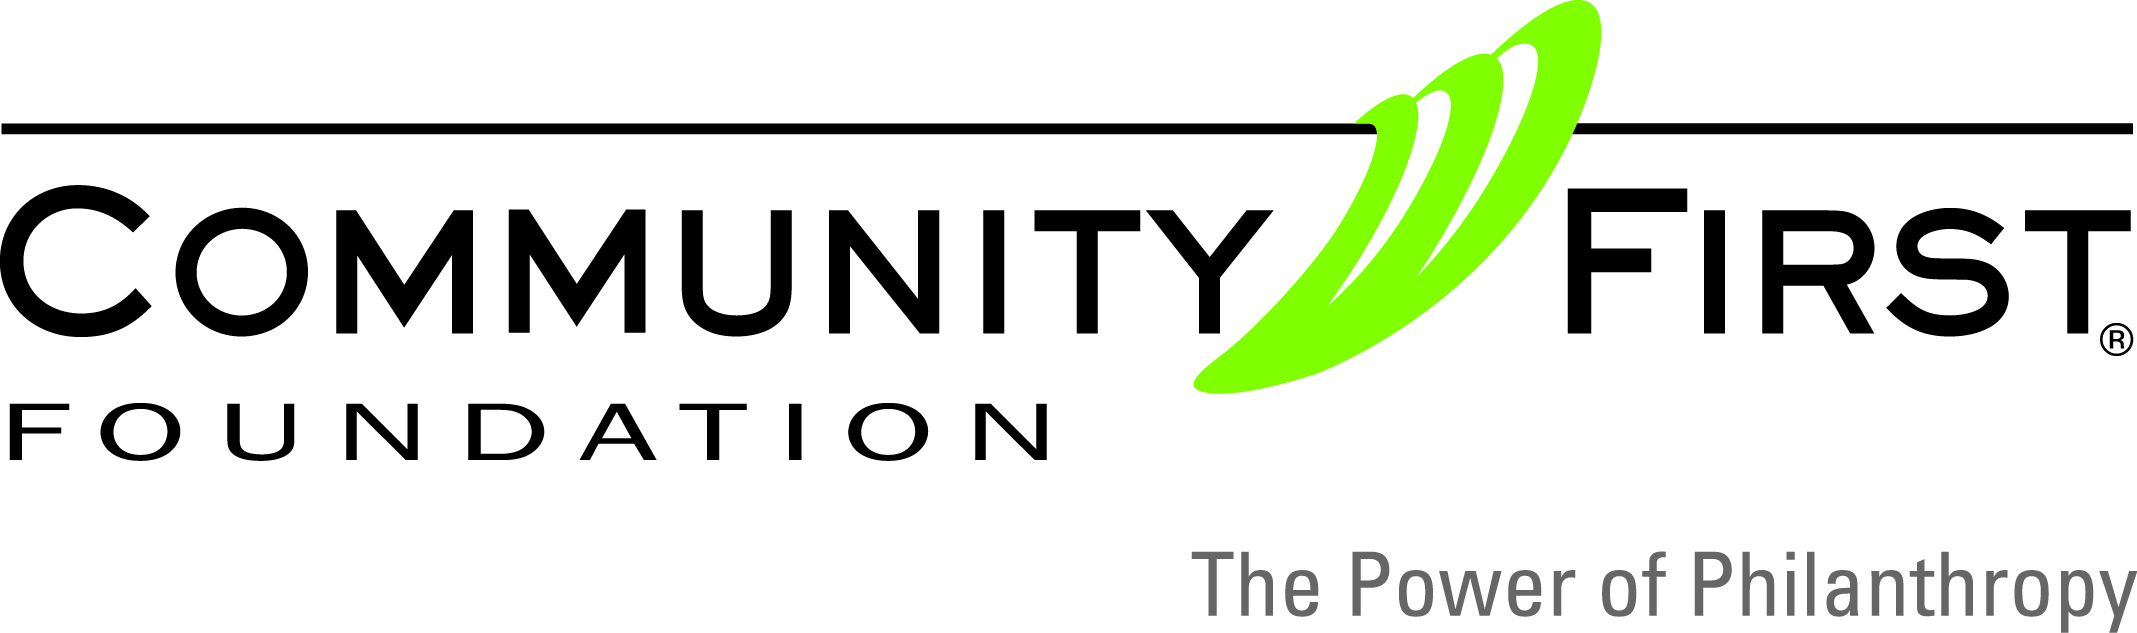 Community-First-Foundation_RGB